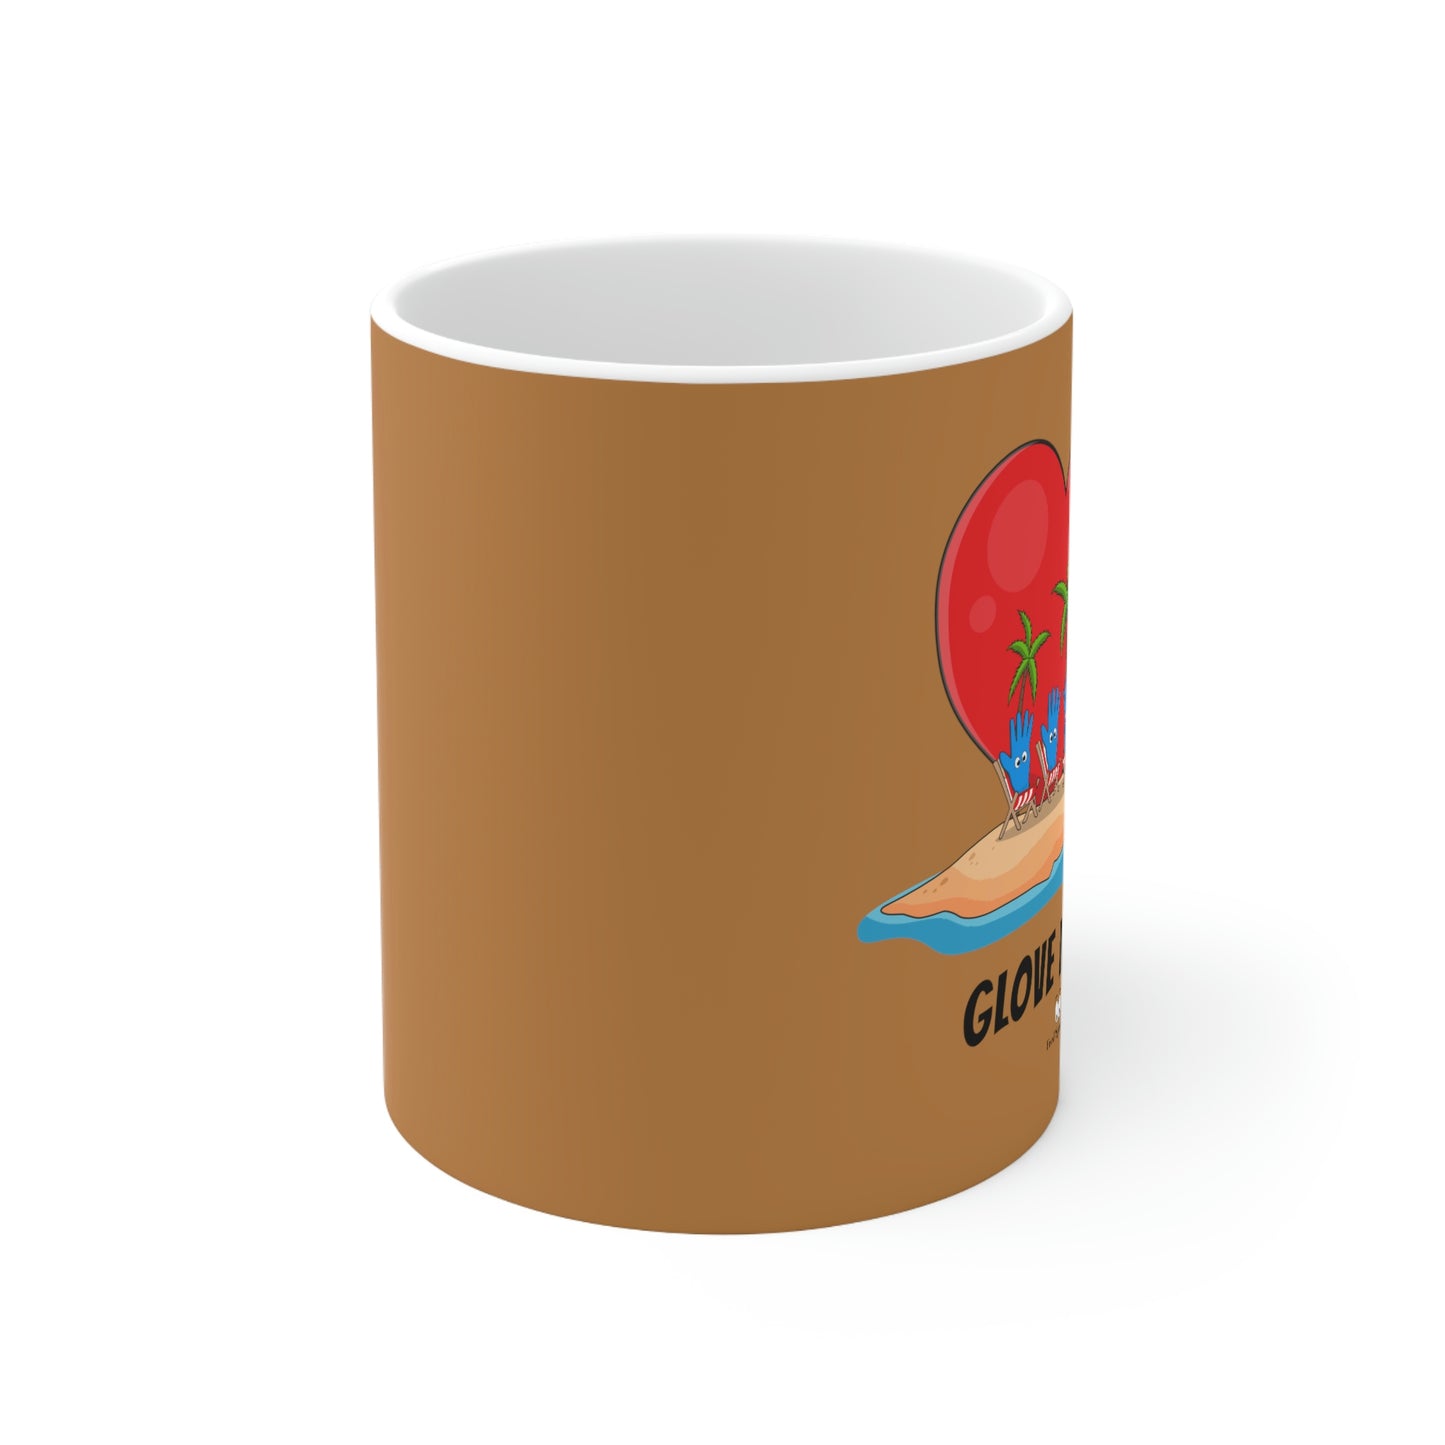 Glove Island Ceramic Coffee Cup